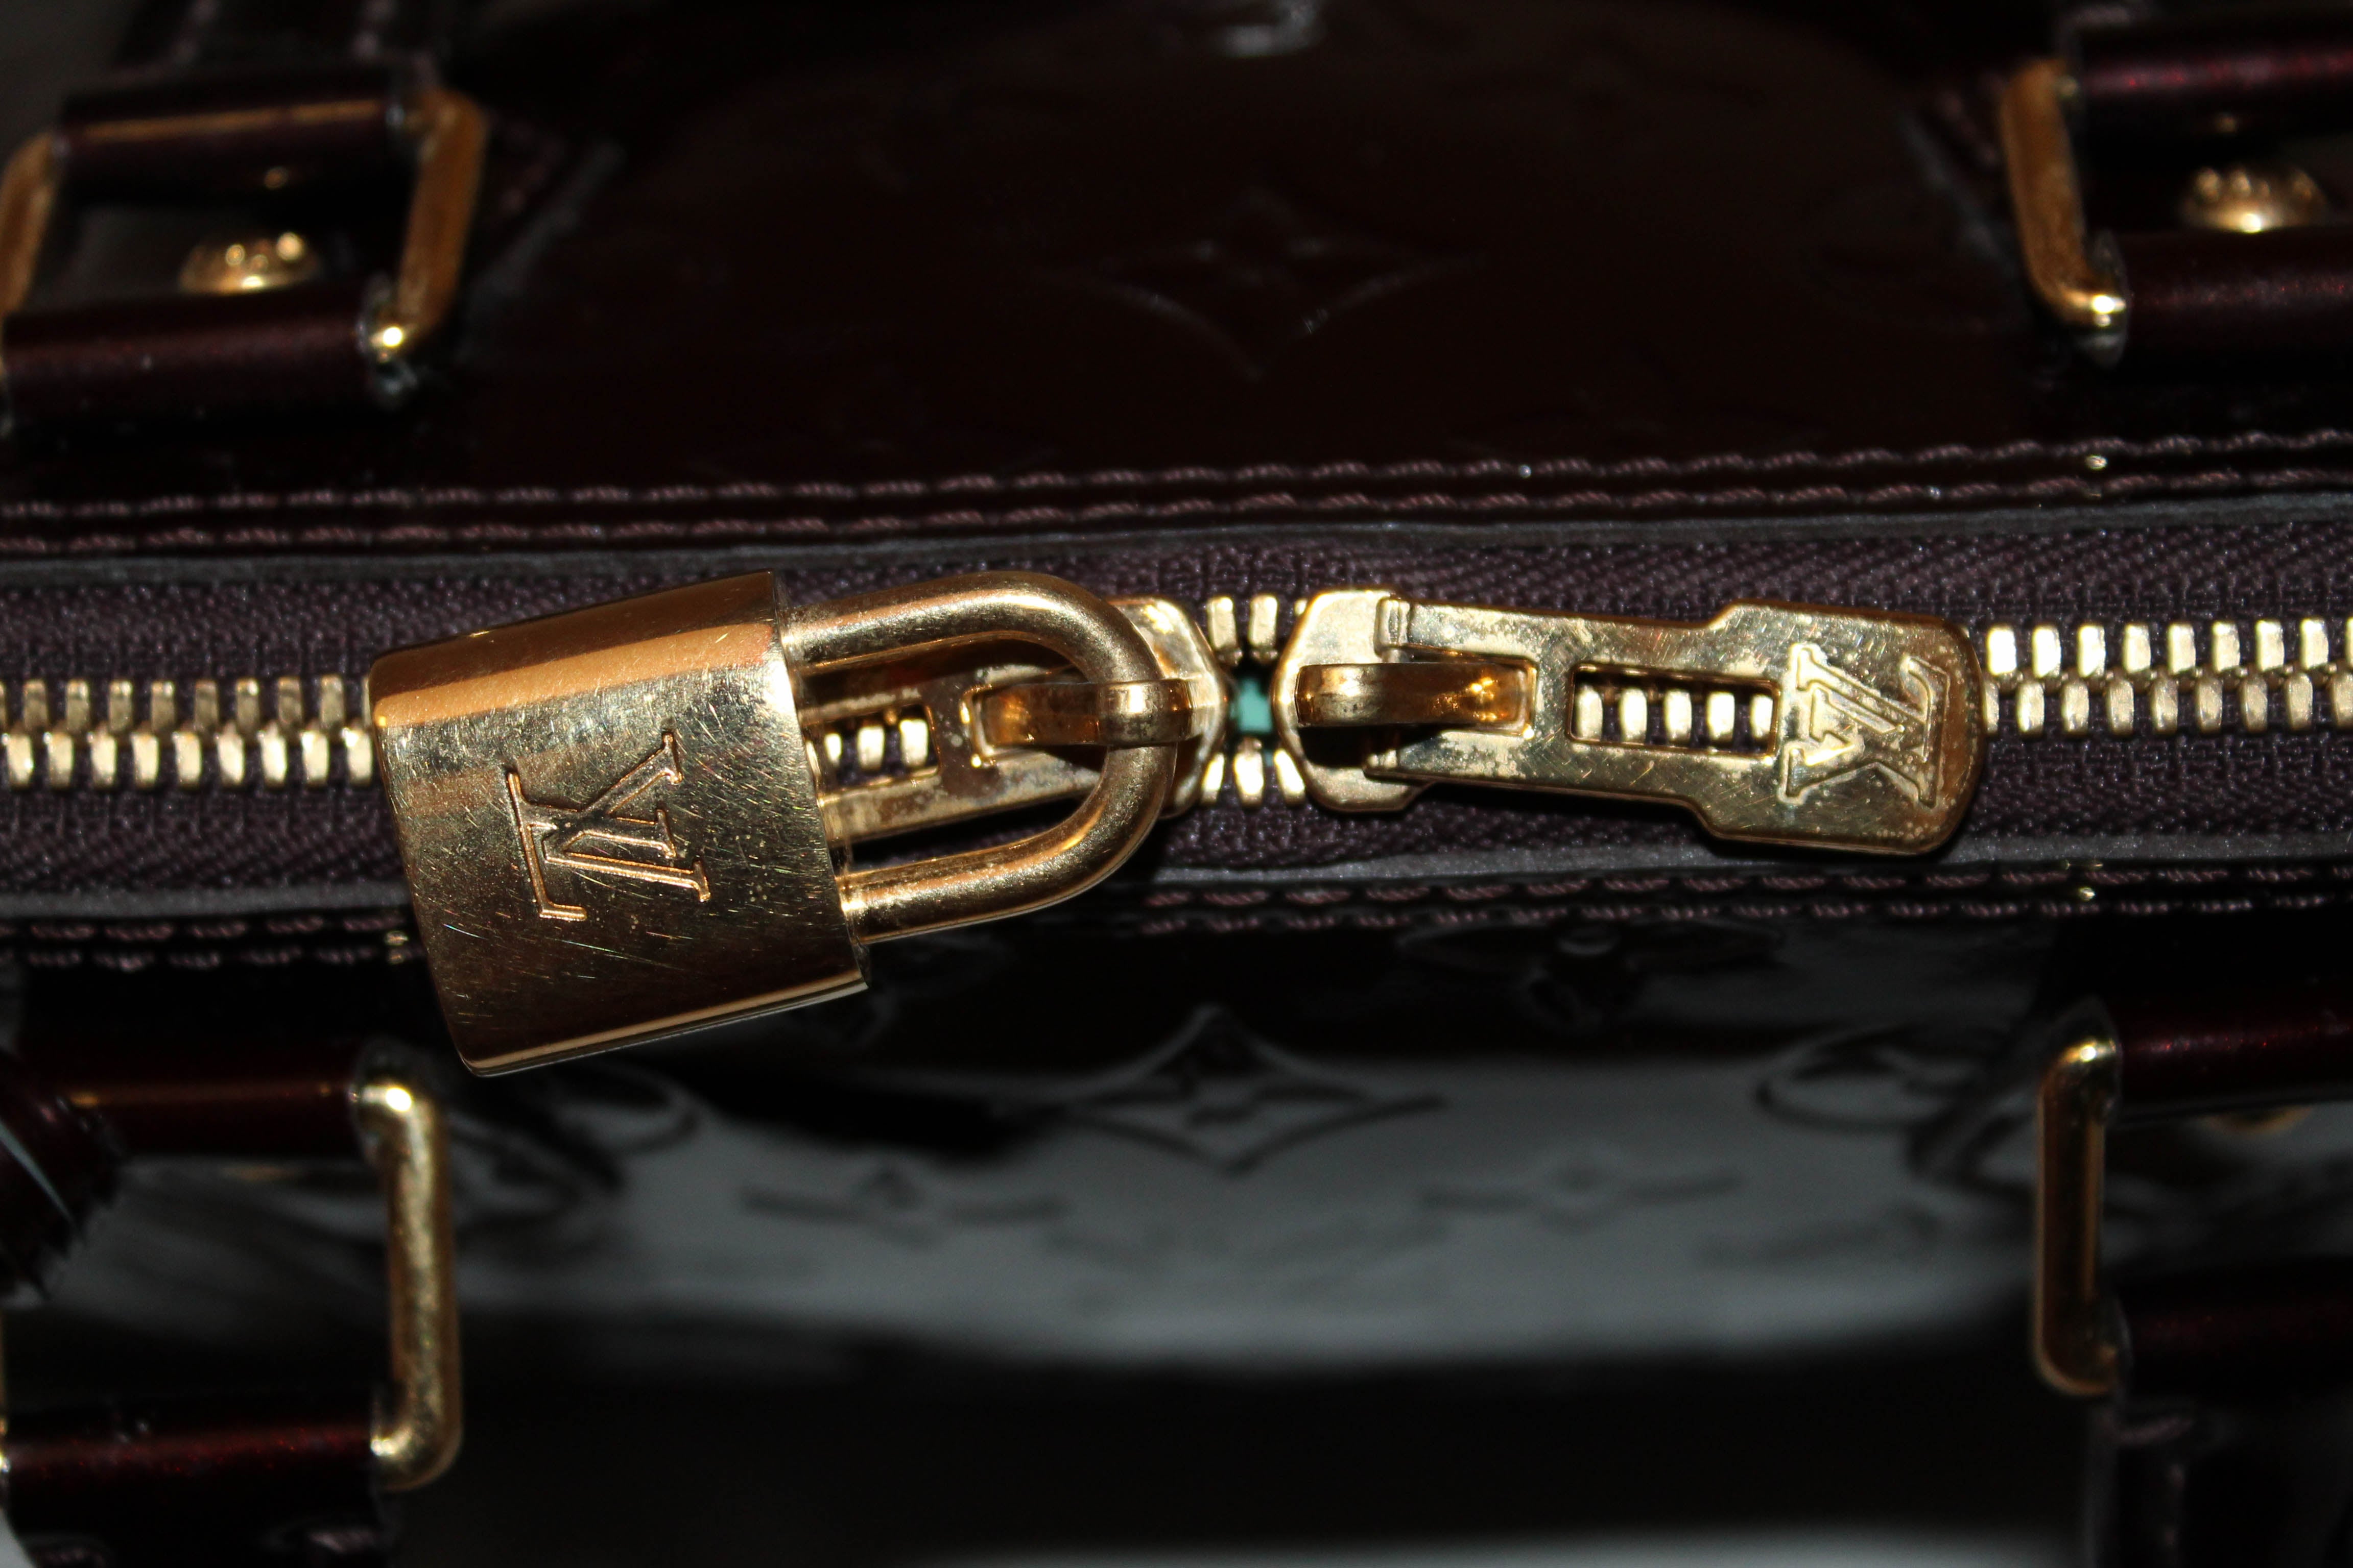 Authentic Louis Vuitton Amarante Monogram Vernis Leather Alma PM Handbag